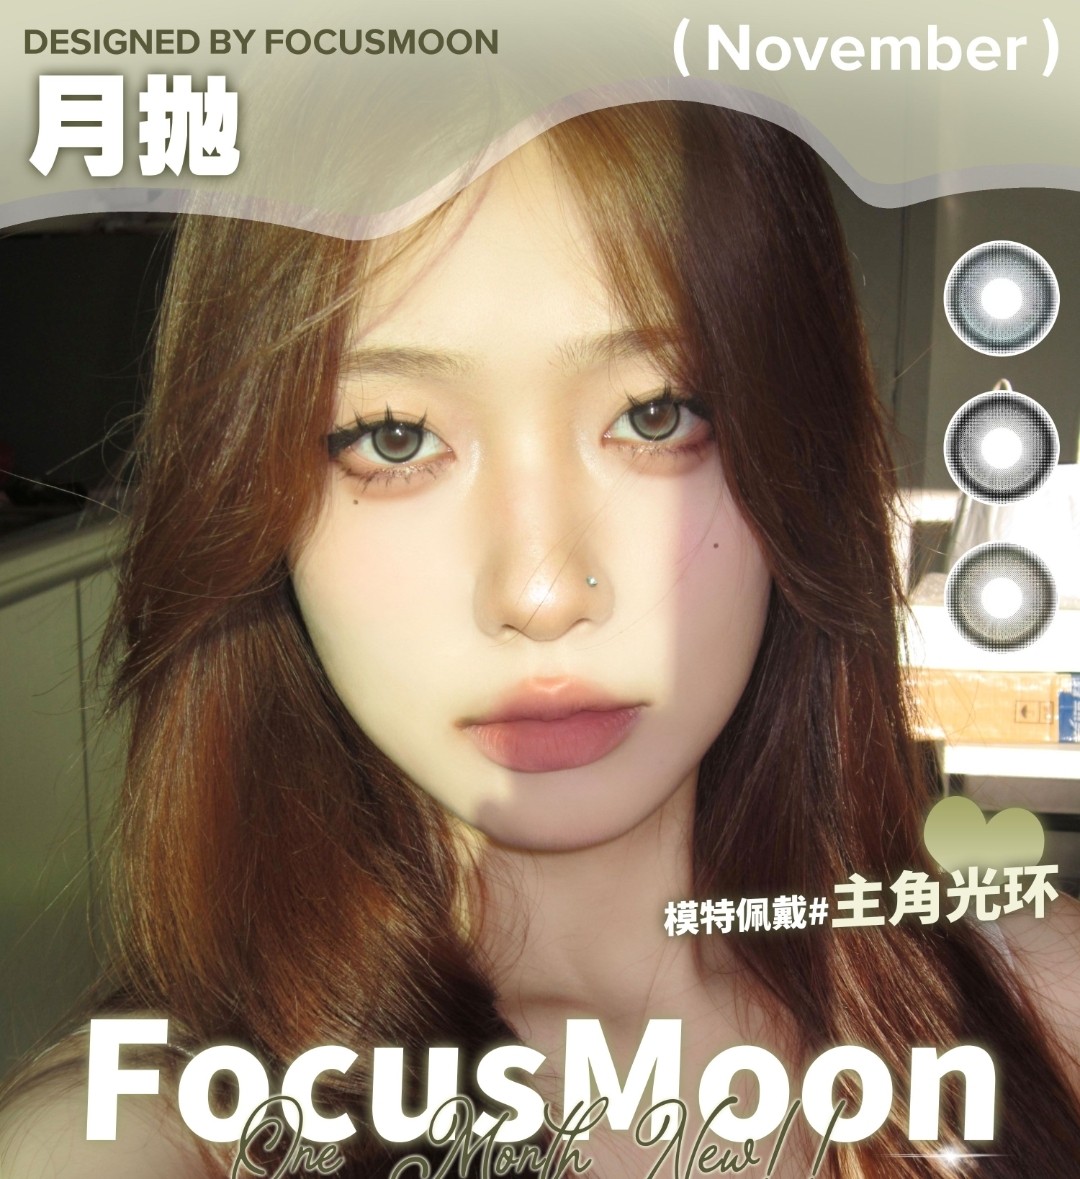 【月抛】FocusMoon 不等了 现在就要买买买 亮眼半高光小弹珠太好看了